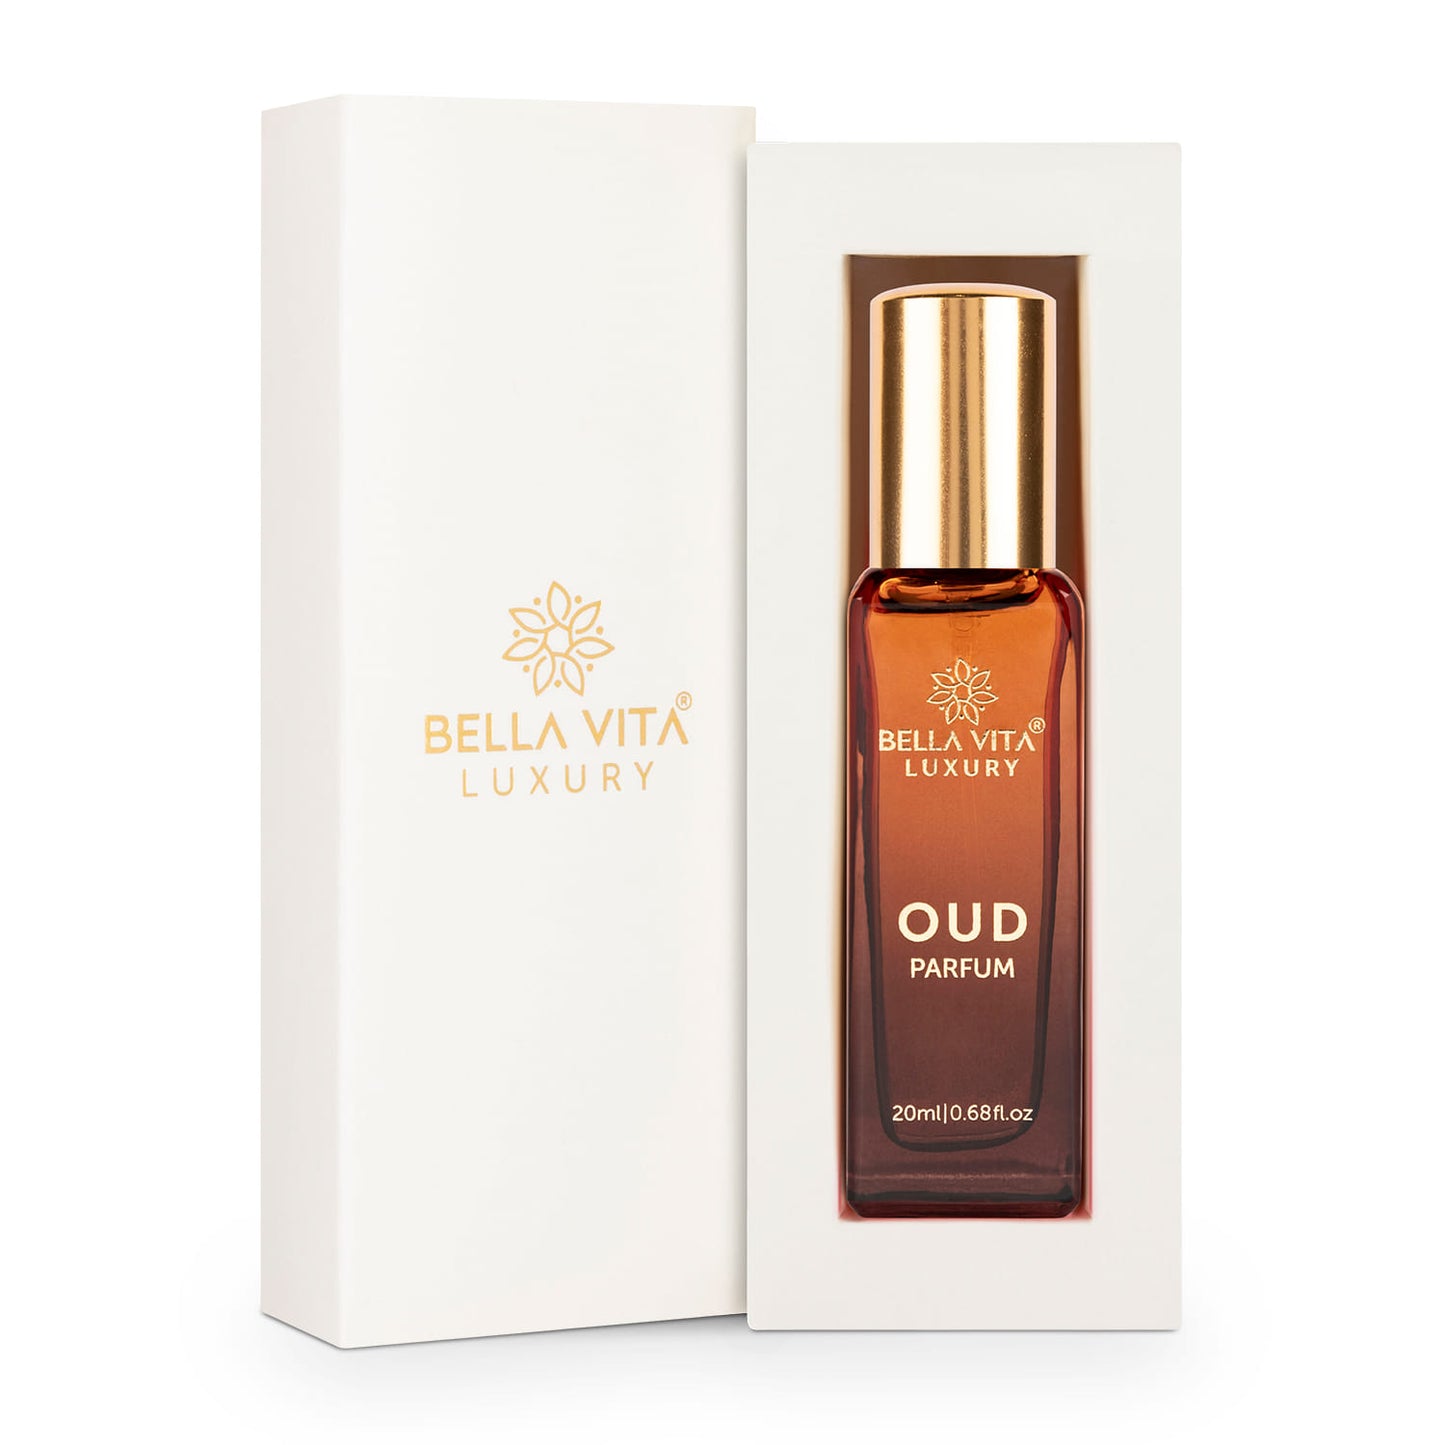 OUD Unisex - Bella Vita Luxury